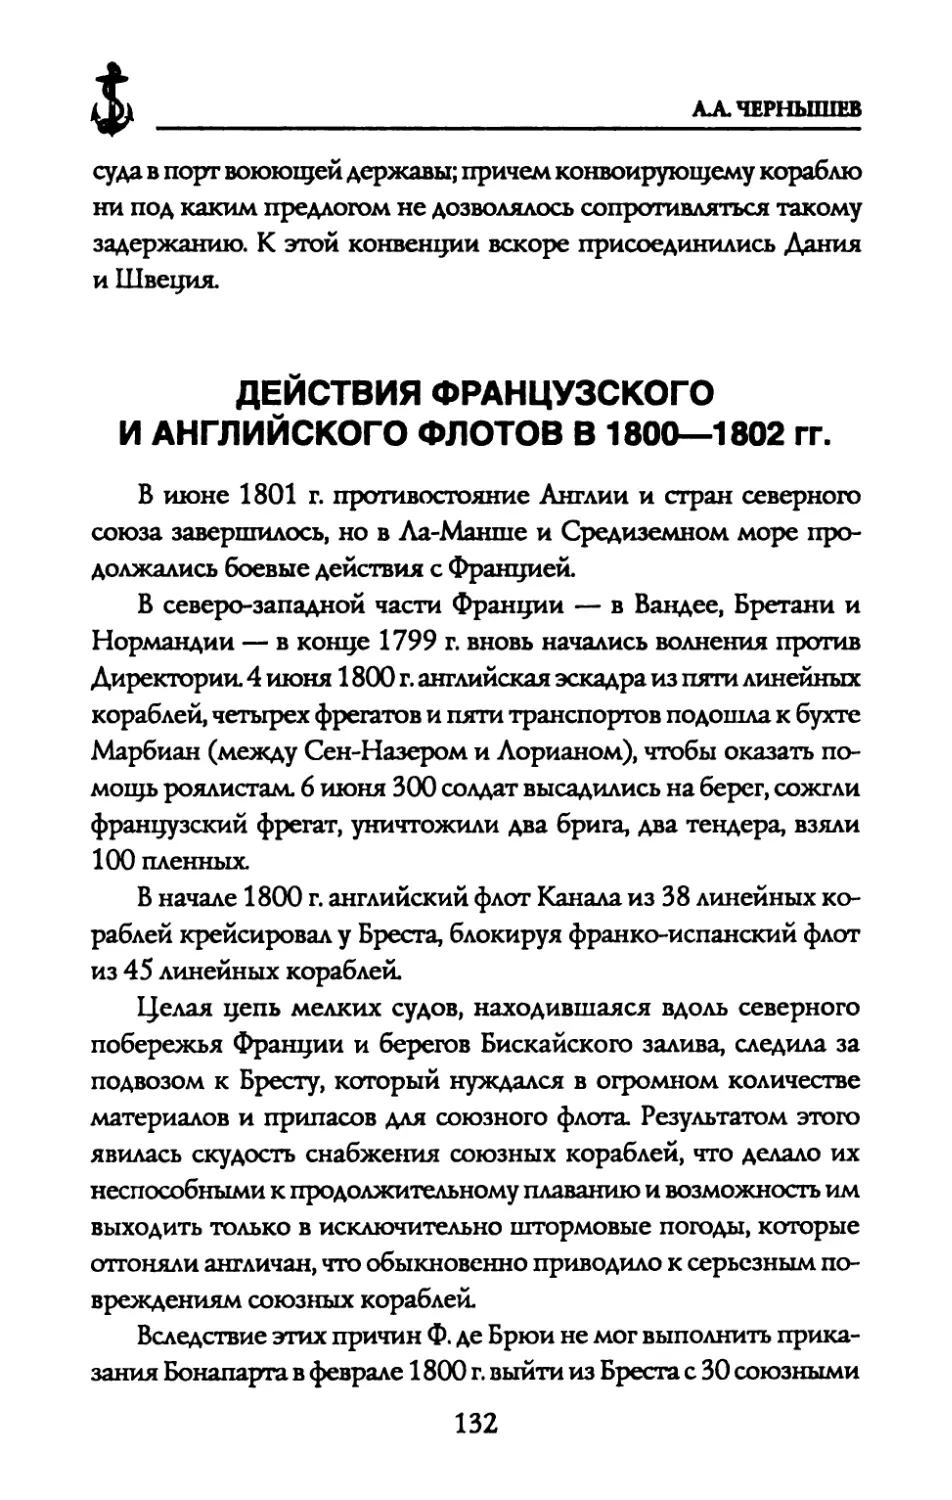 ДЕЙСТВИЯ ФРАНЦУЗСКОГО И АНГЛИЙСКОГО ФЛОТОВ В 1800—1802 гг.